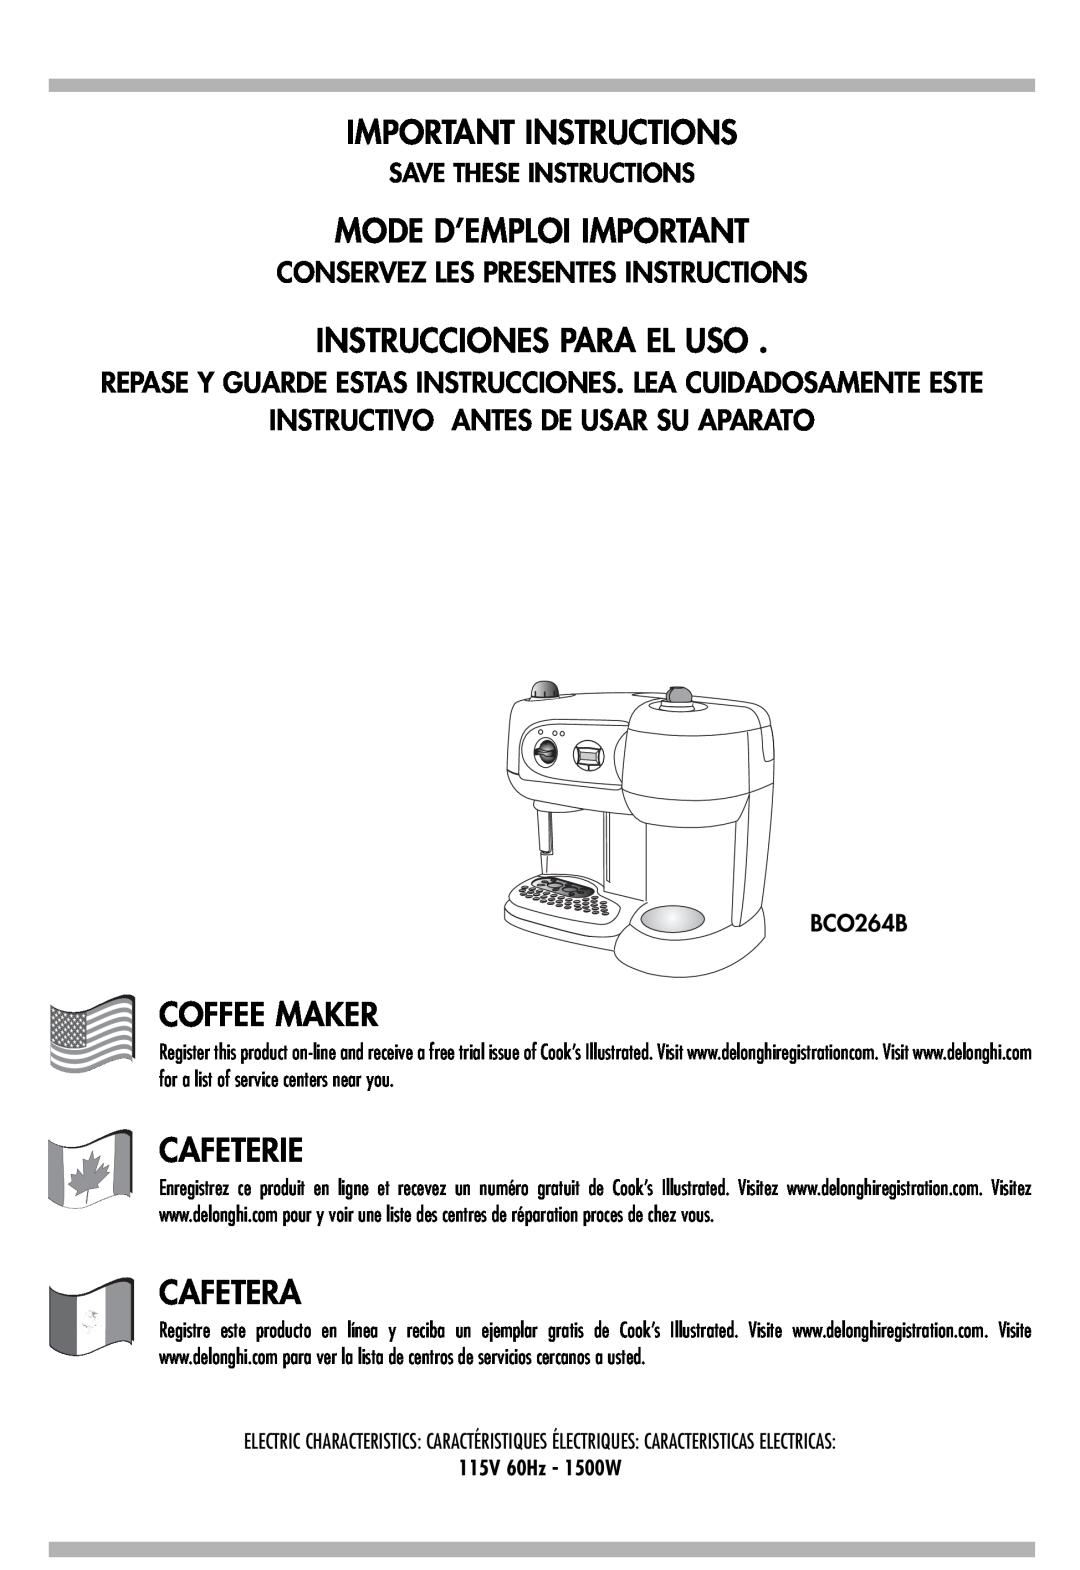 DeLonghi BCO264B manual Conservez Les Presentes Instructions, Instructivo Antes De Usar Su Aparato, Important Instructions 